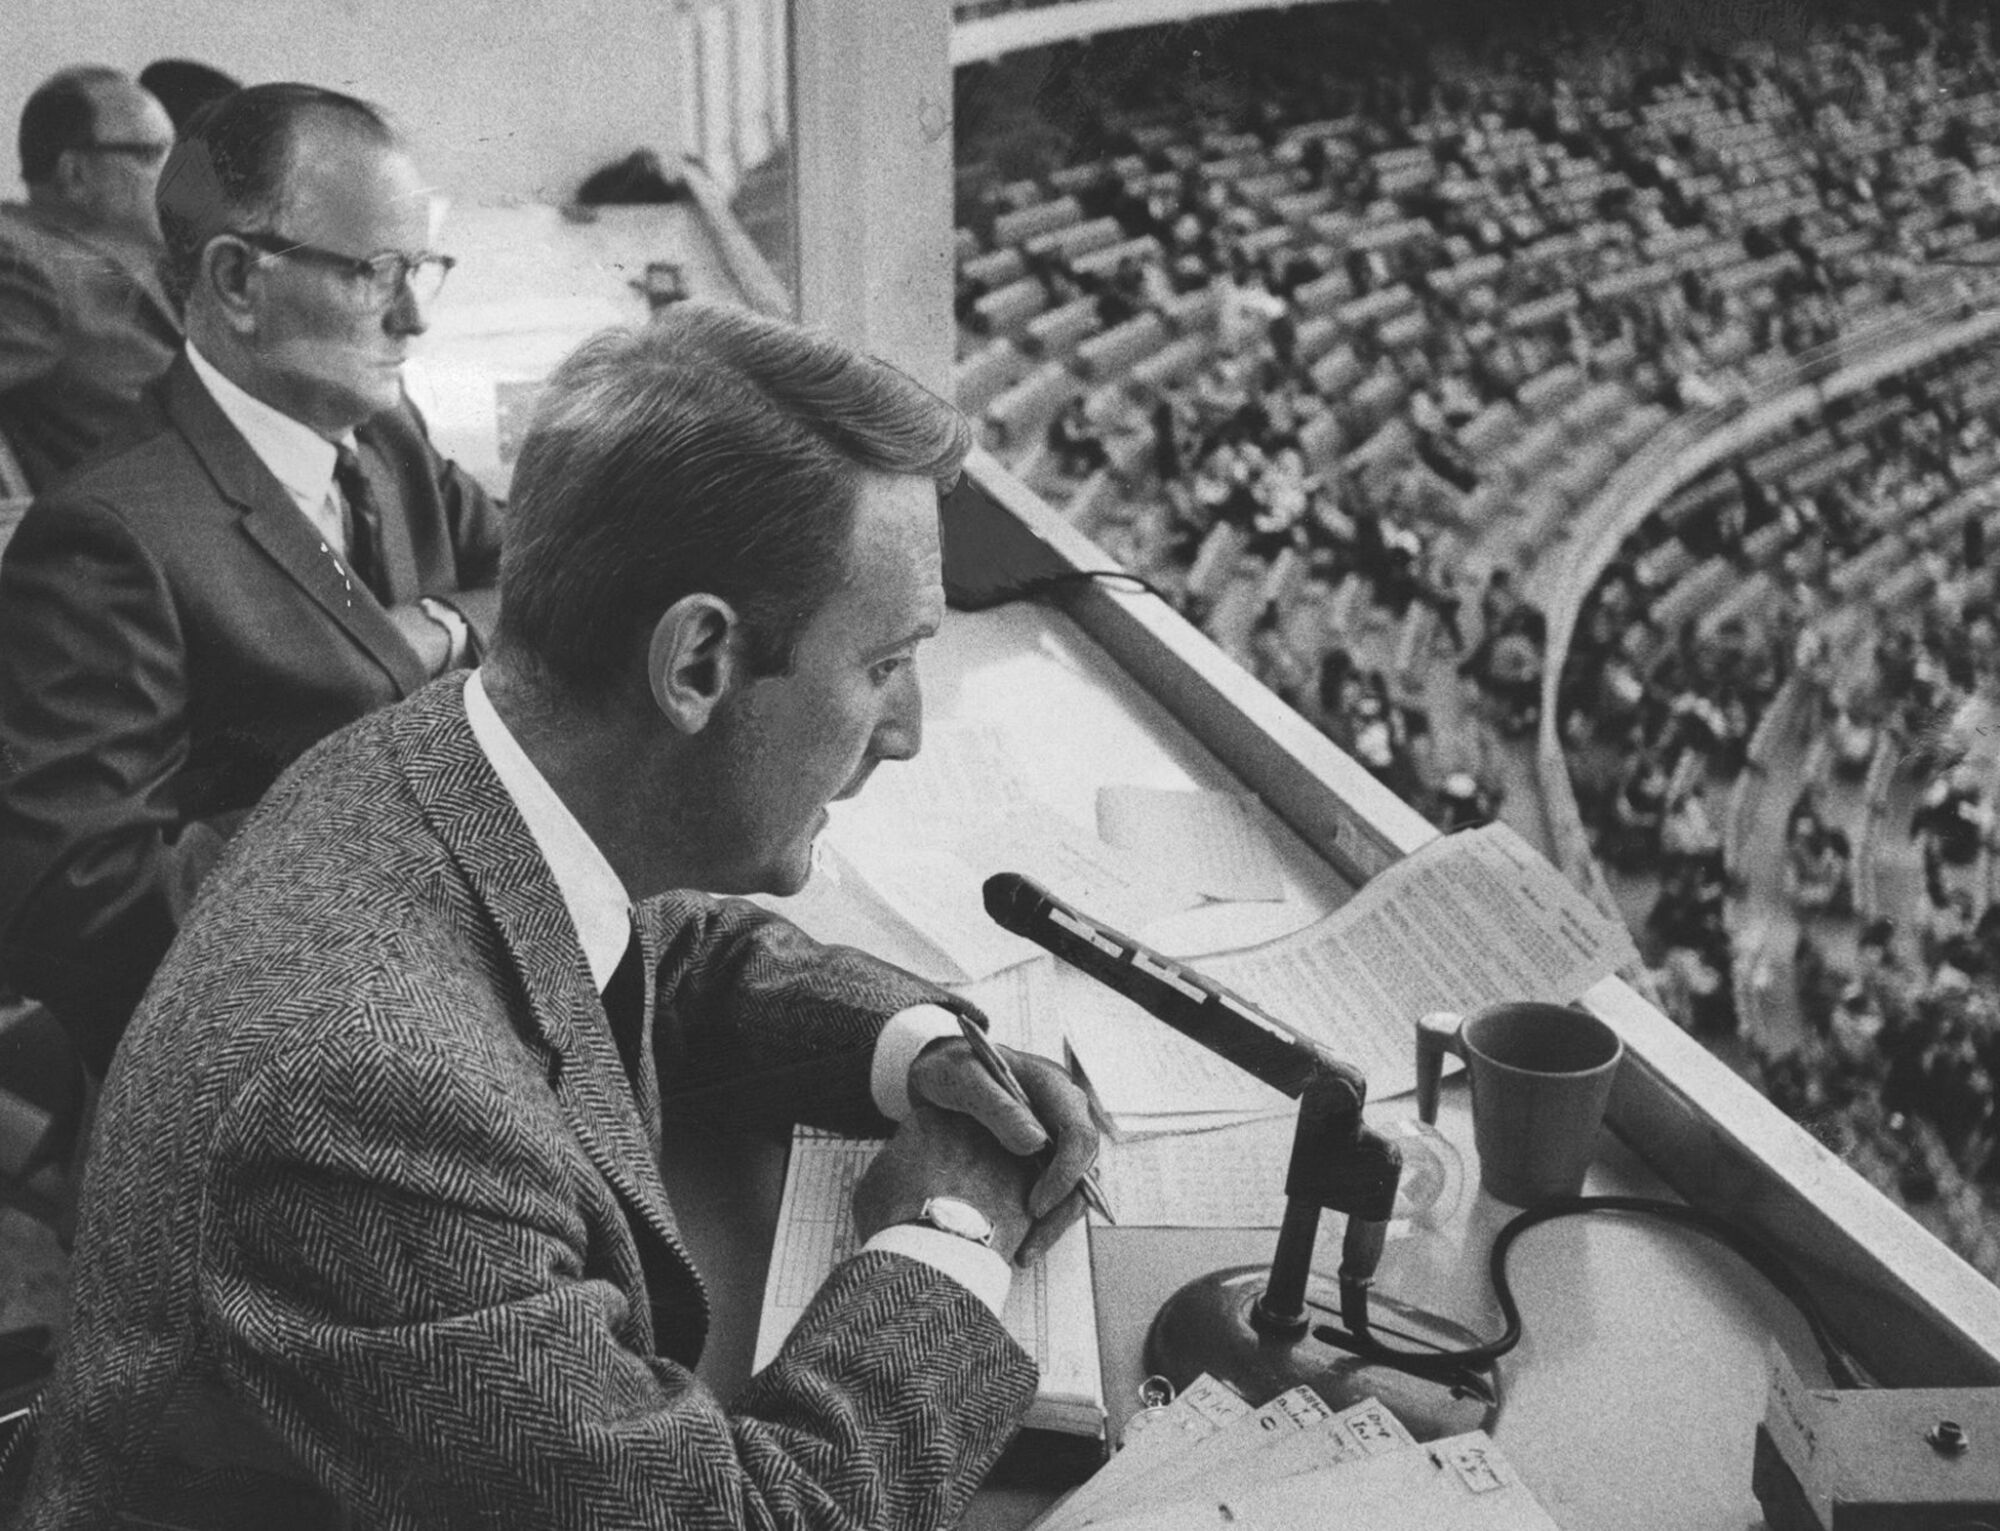 وین اسکالی در سال 1967 یک بازی Dodgers را صدا می کند. شوخی آرامش بخش او به یک نسیم گرم تشبیه شد.